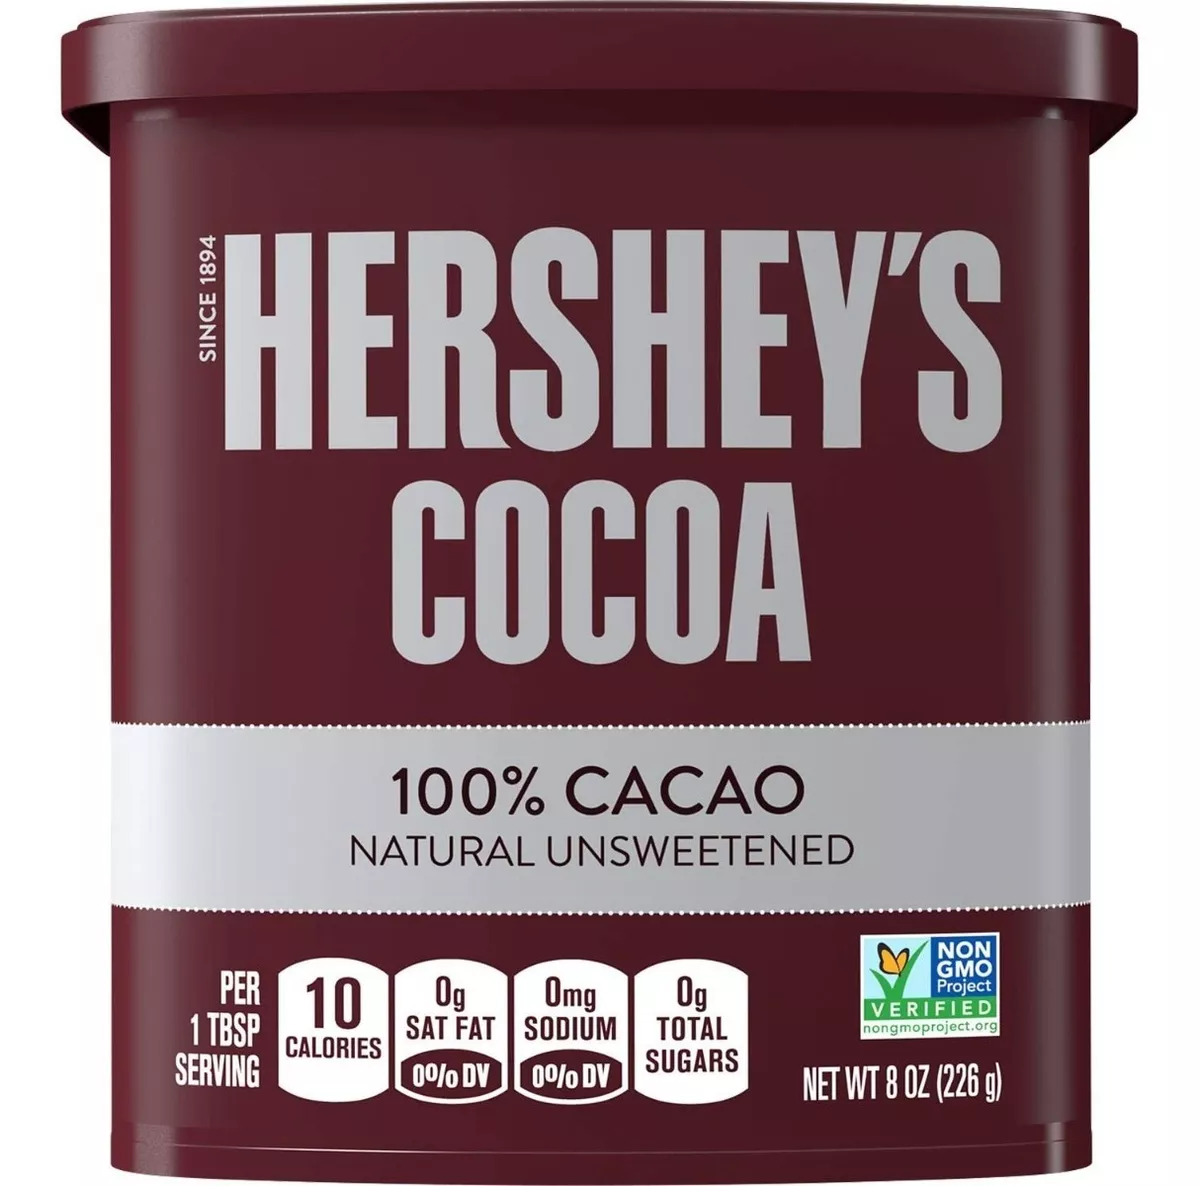 Tercera imagen para búsqueda de cocoa hershey